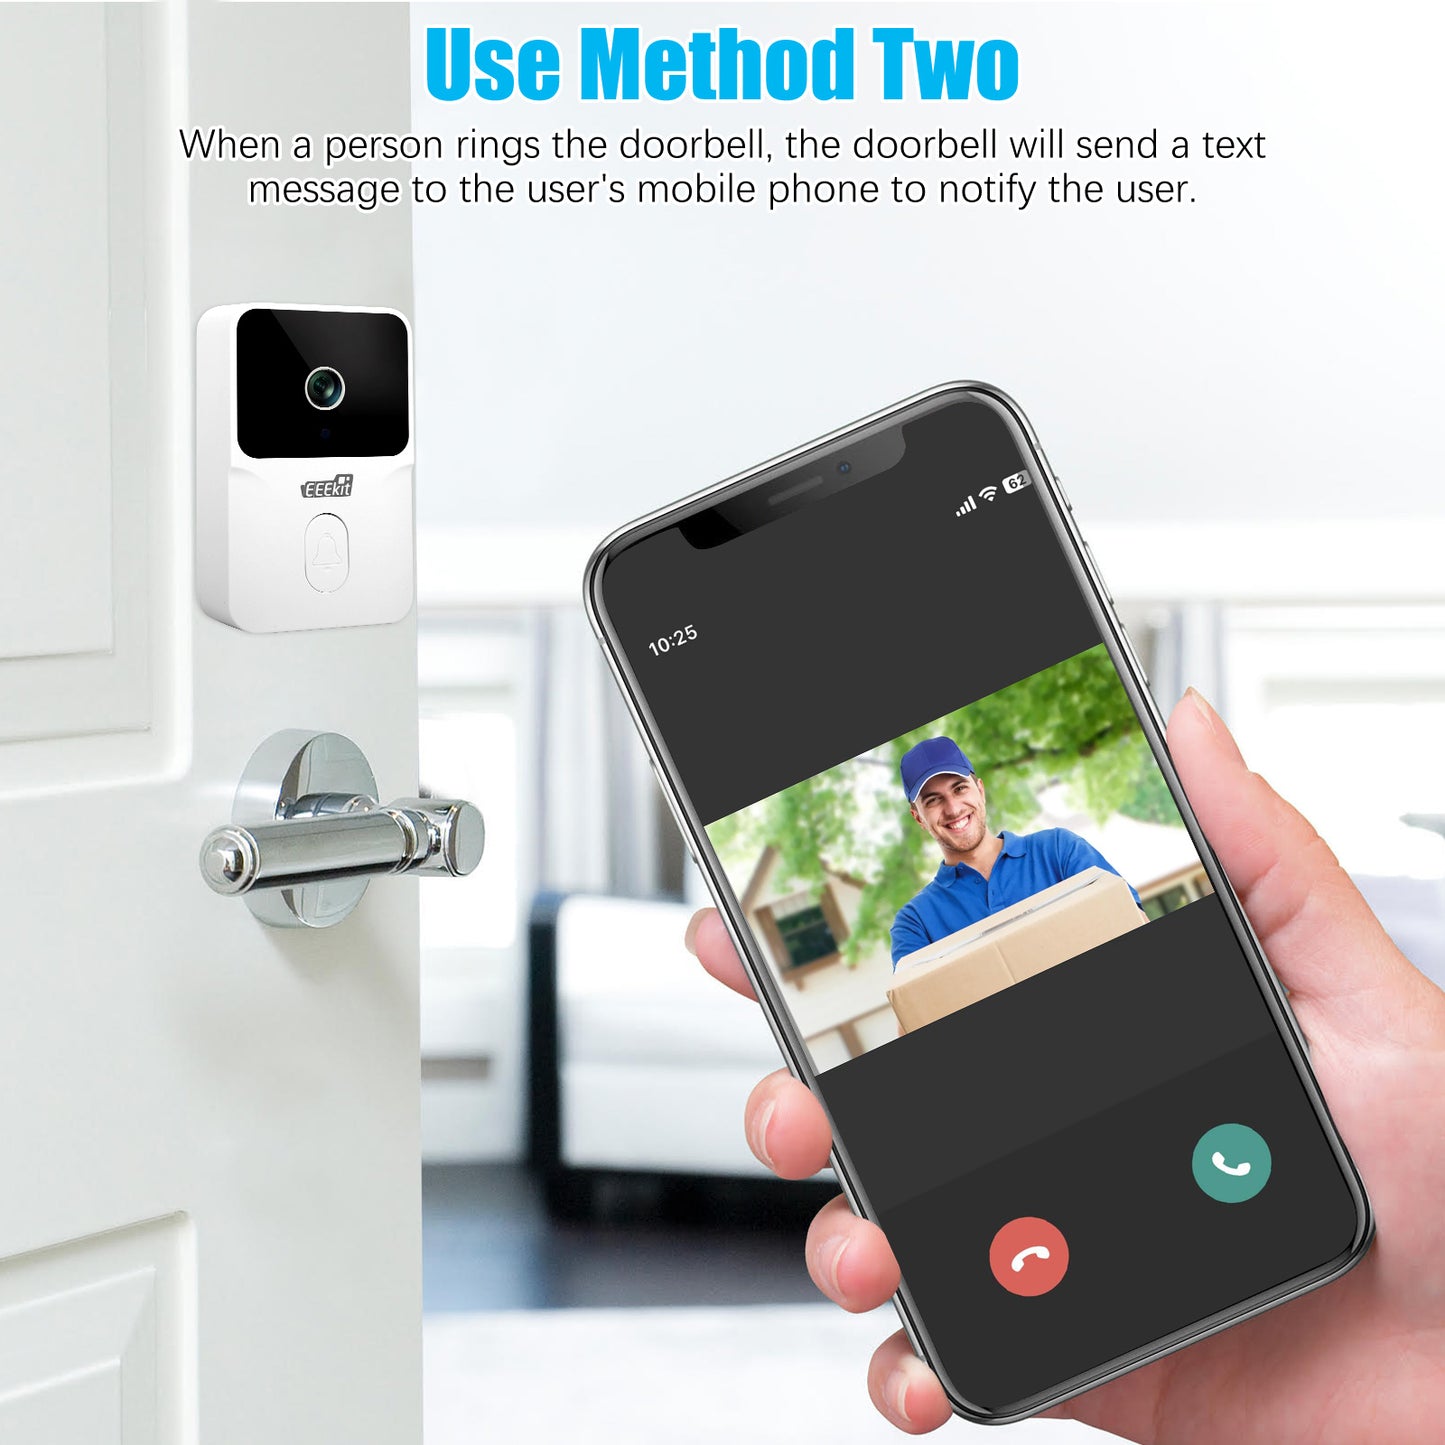 EEEKit Wireless Doorbell with Camera